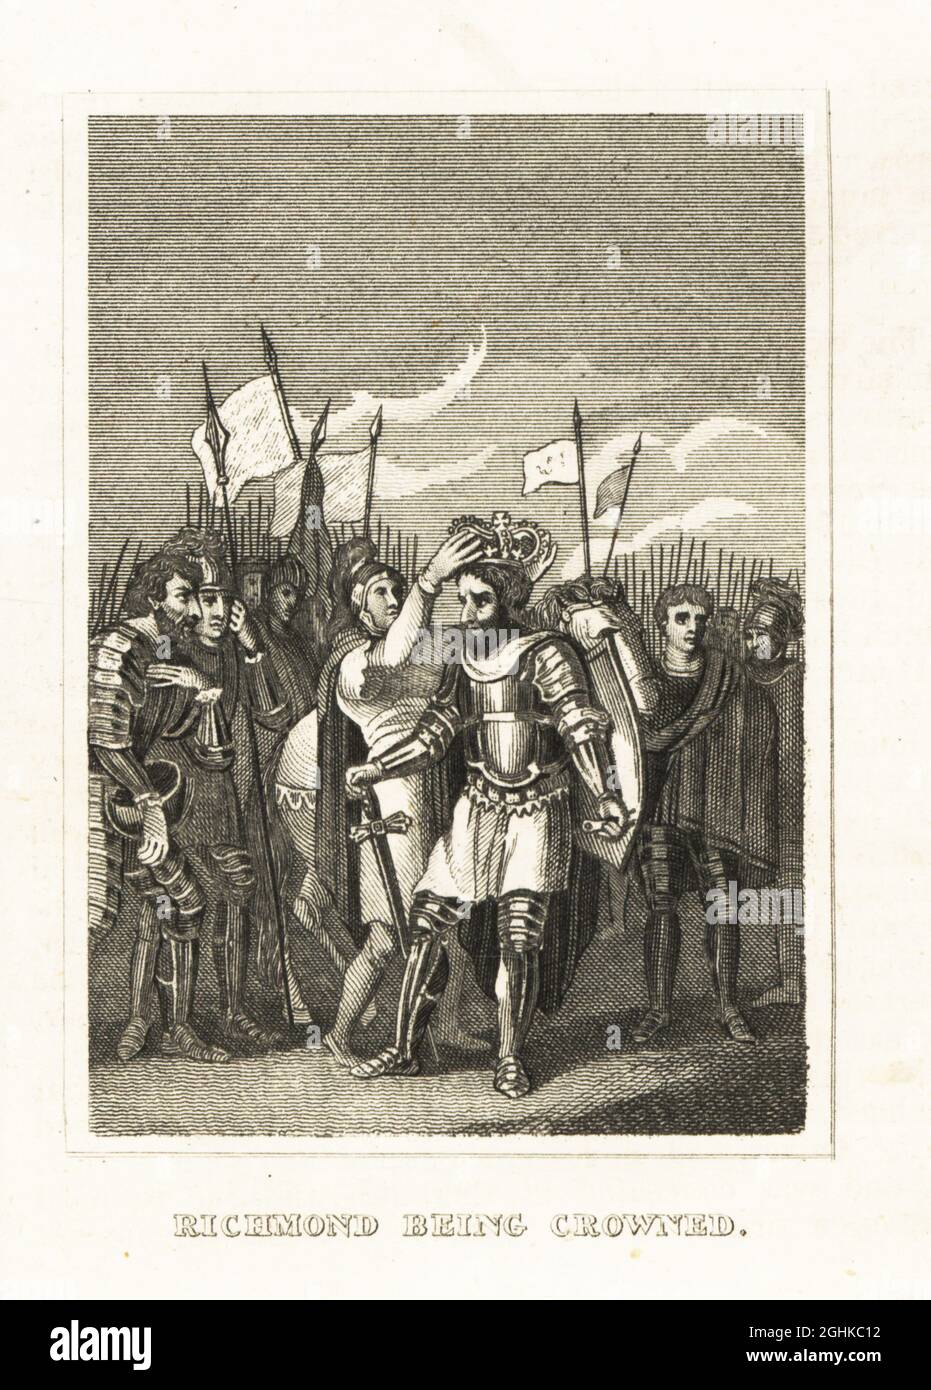 Enrico Tudor, II conte di Richmond, incoronò il re Enrico VII d'Inghilterra nella battaglia di Bosworth Field, 1485. In corazza piena con scudo e spada, circondata dalle sue truppe. Richmond è stata incoronata. Incisione in copperplate dalla Storia d’Inghilterra di M. A. Jones da Giulio Cesare a Giorgio IV, G. Virtue, 26 Ivy Lane, Londra, 1836. Foto Stock